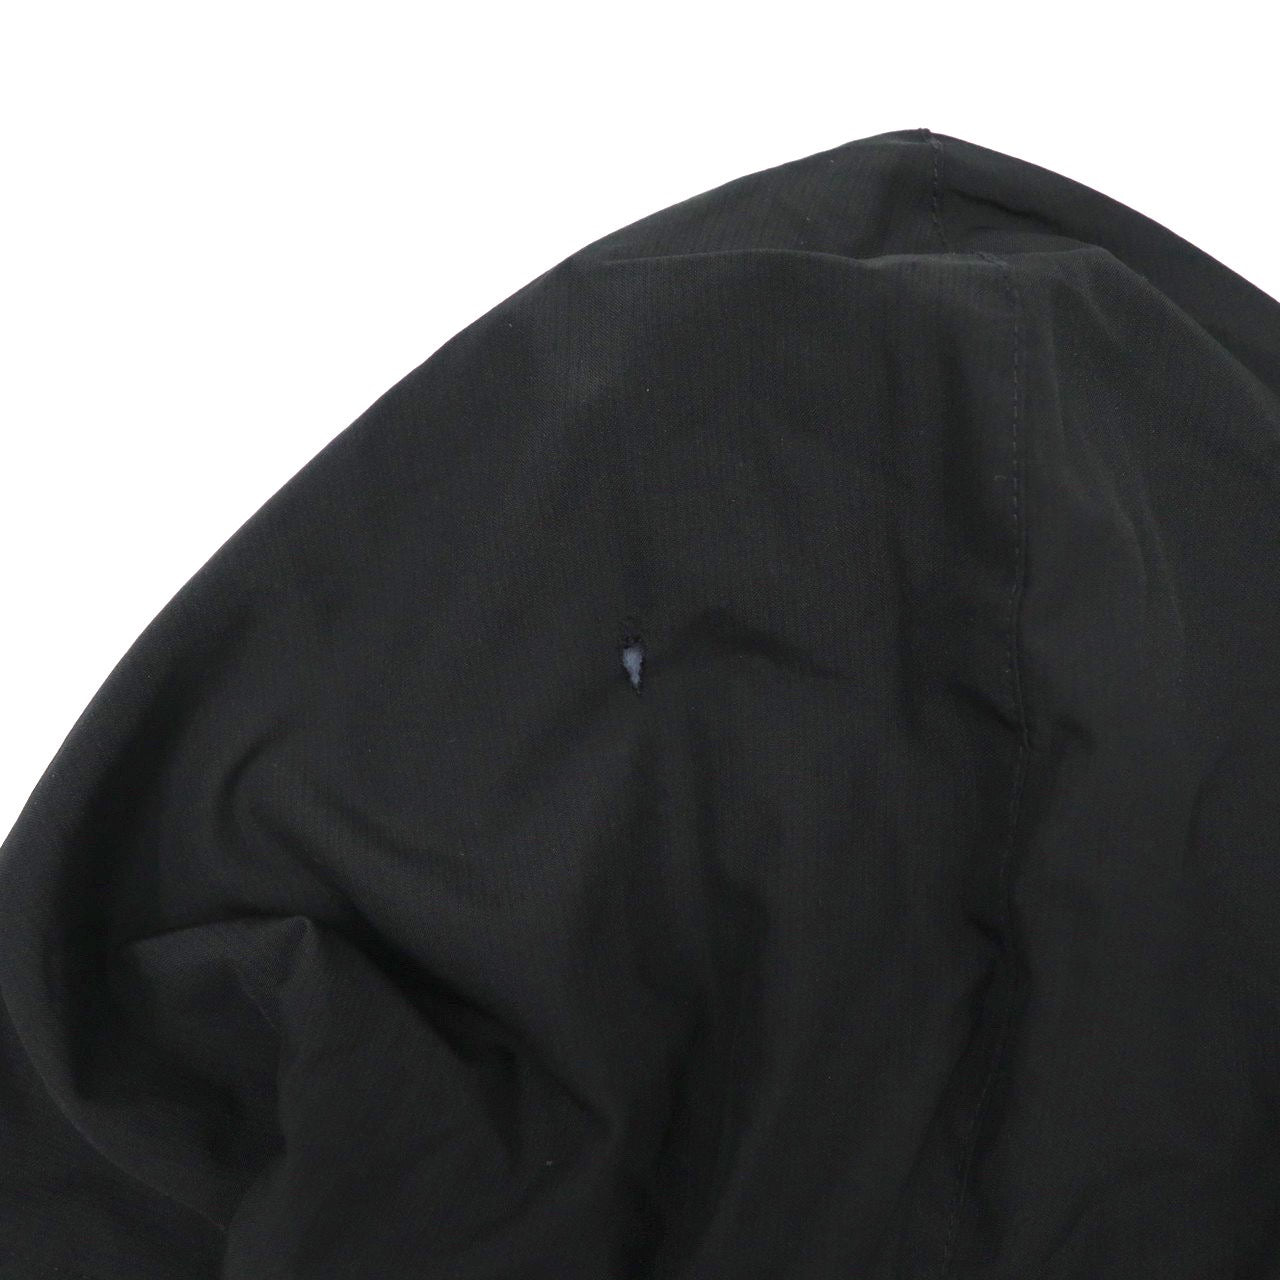 NIKE フーデッドオーバーコート ベンチコート S ブラック フリースライナー サイドライン スウォッシュロゴ刺繍